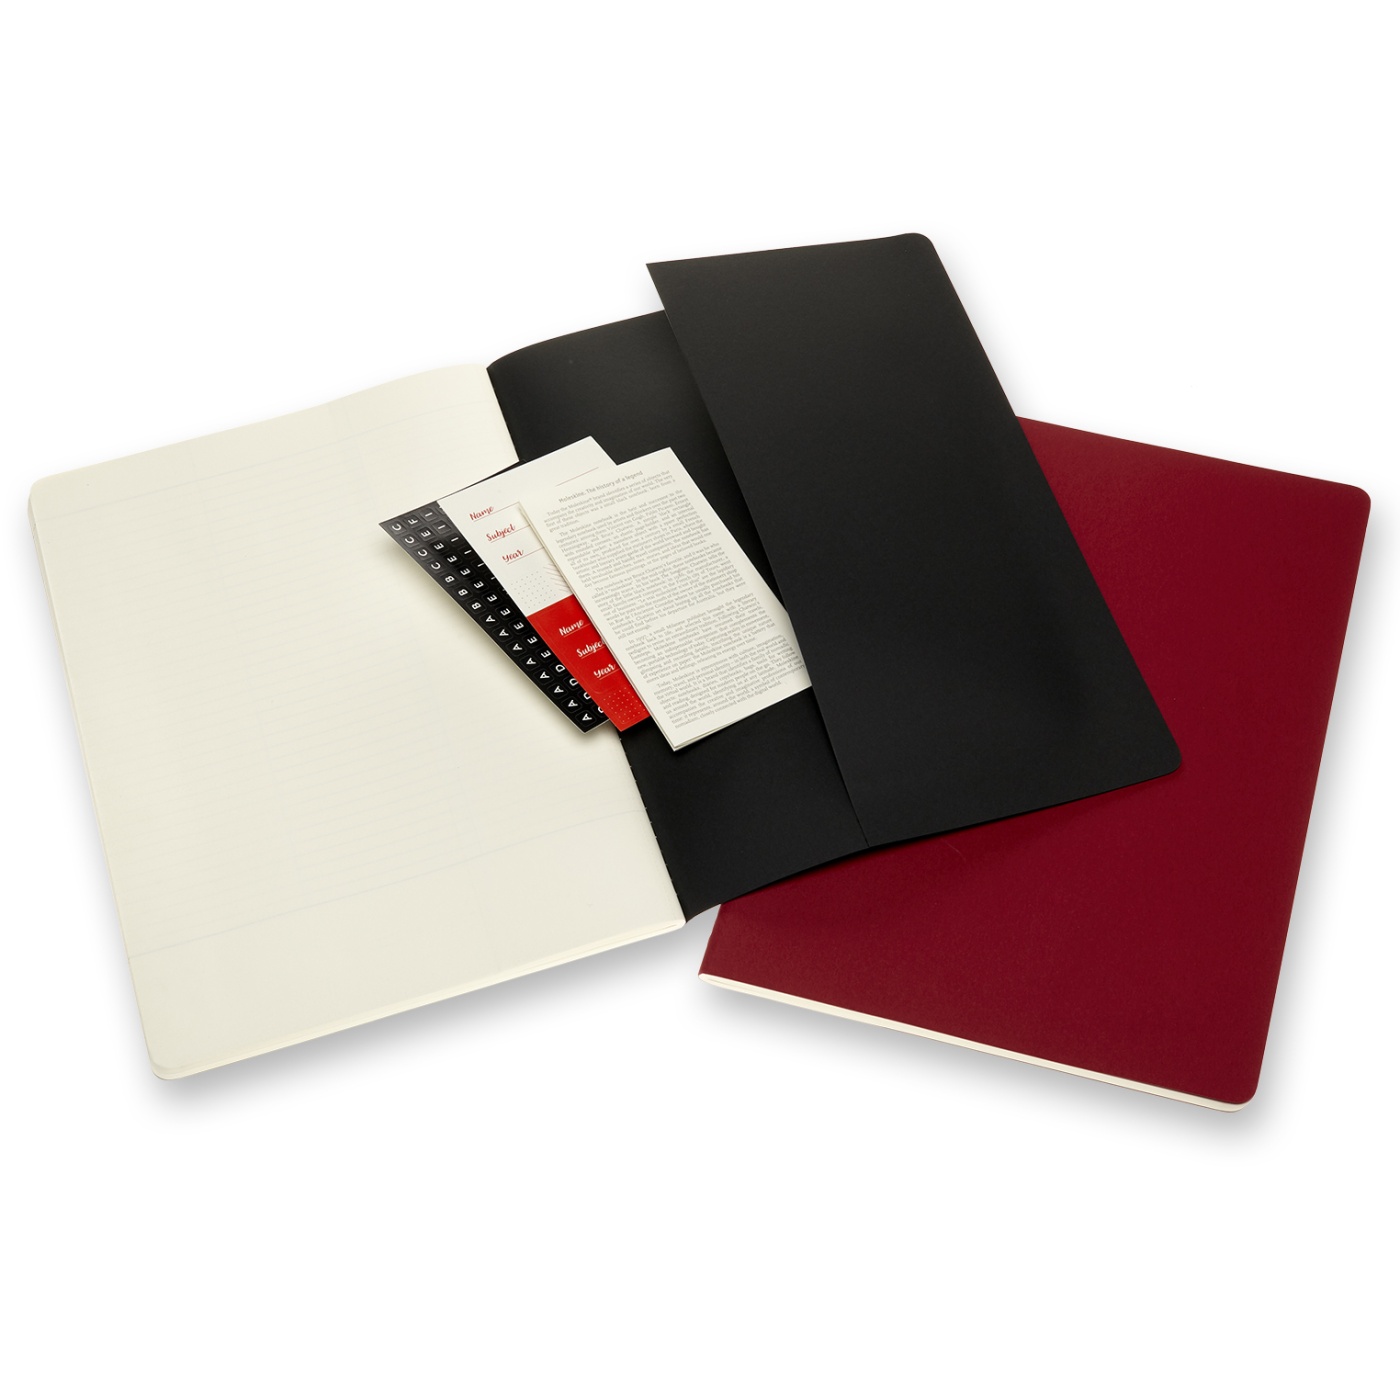 Cahier Subject A4 Black/Red Ruled dans le groupe Papiers & Blocs / Écrire et consigner / Blocs-notes chez Pen Store (100337)